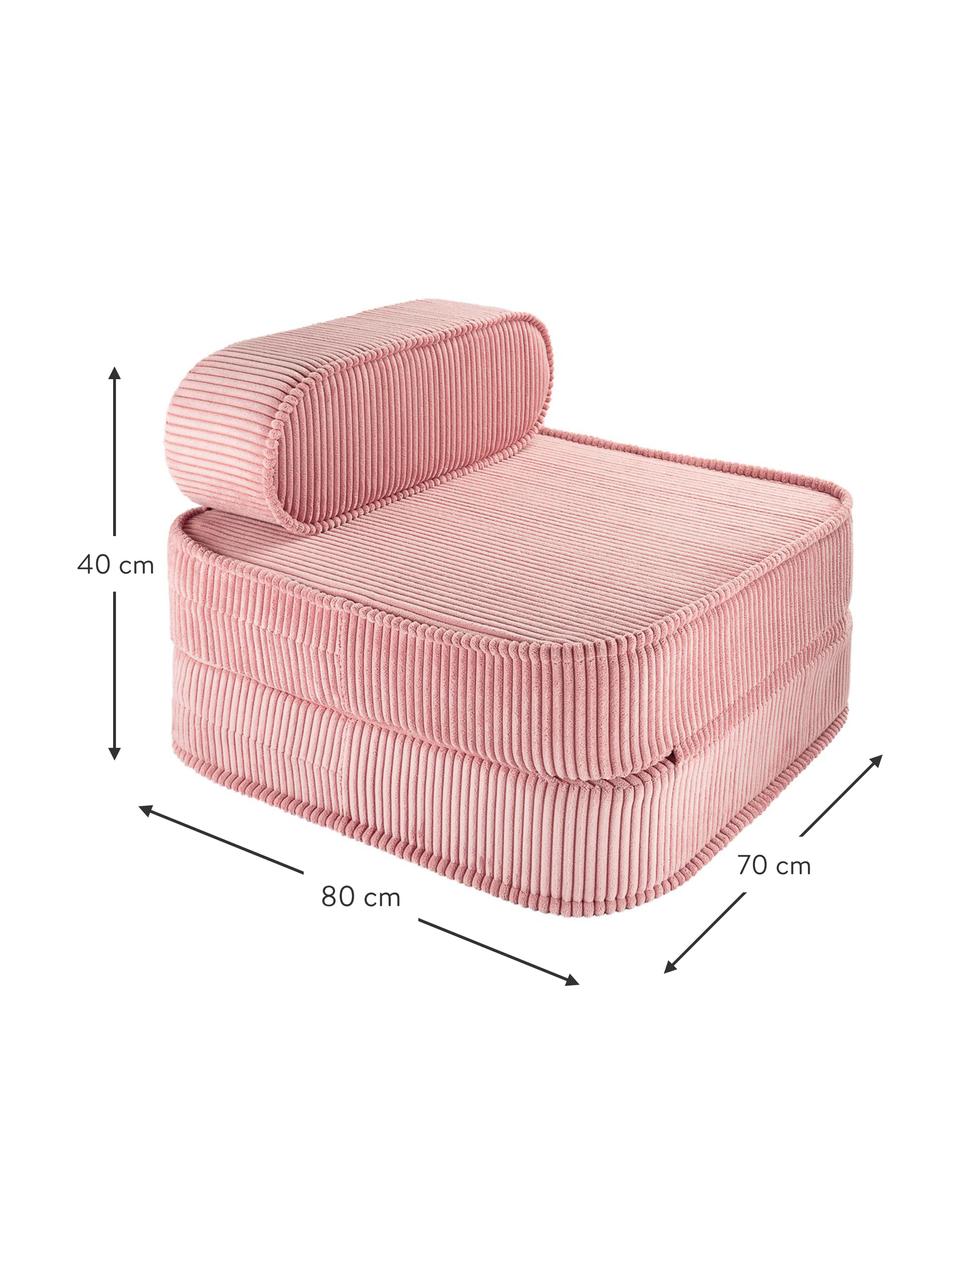 Fotel rozkładany ze sztruksu dla dzieci Sugar, Tapicerka: sztruks (100% poliester) , Bladoróżowy sztruks, S 70 x W 40 cm